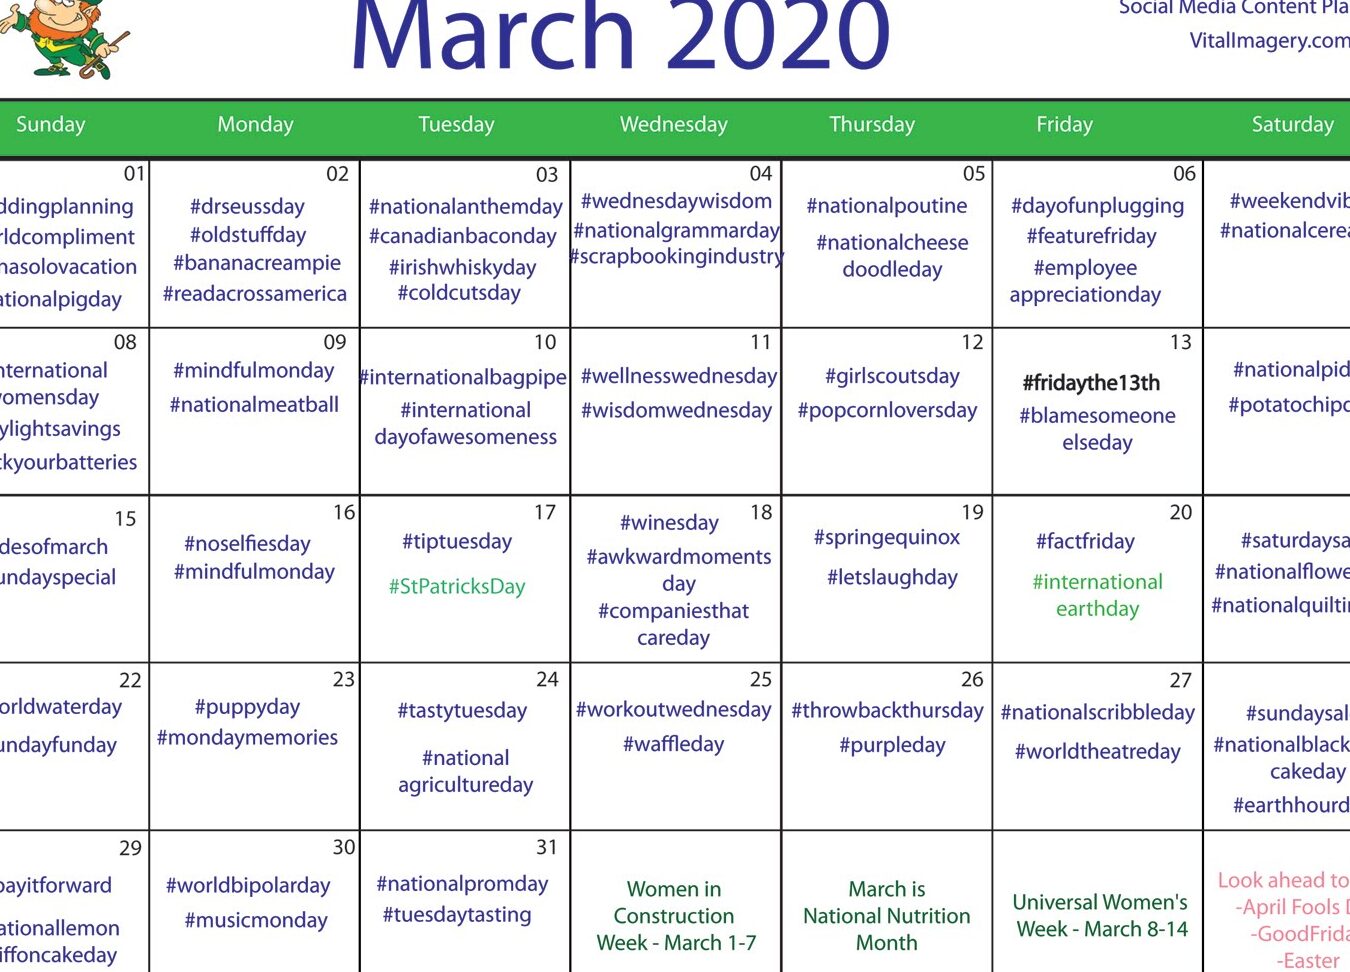 Calendario gratuito de redes sociales - Marzo de 2020 - Blog de imágenes prediseñadas